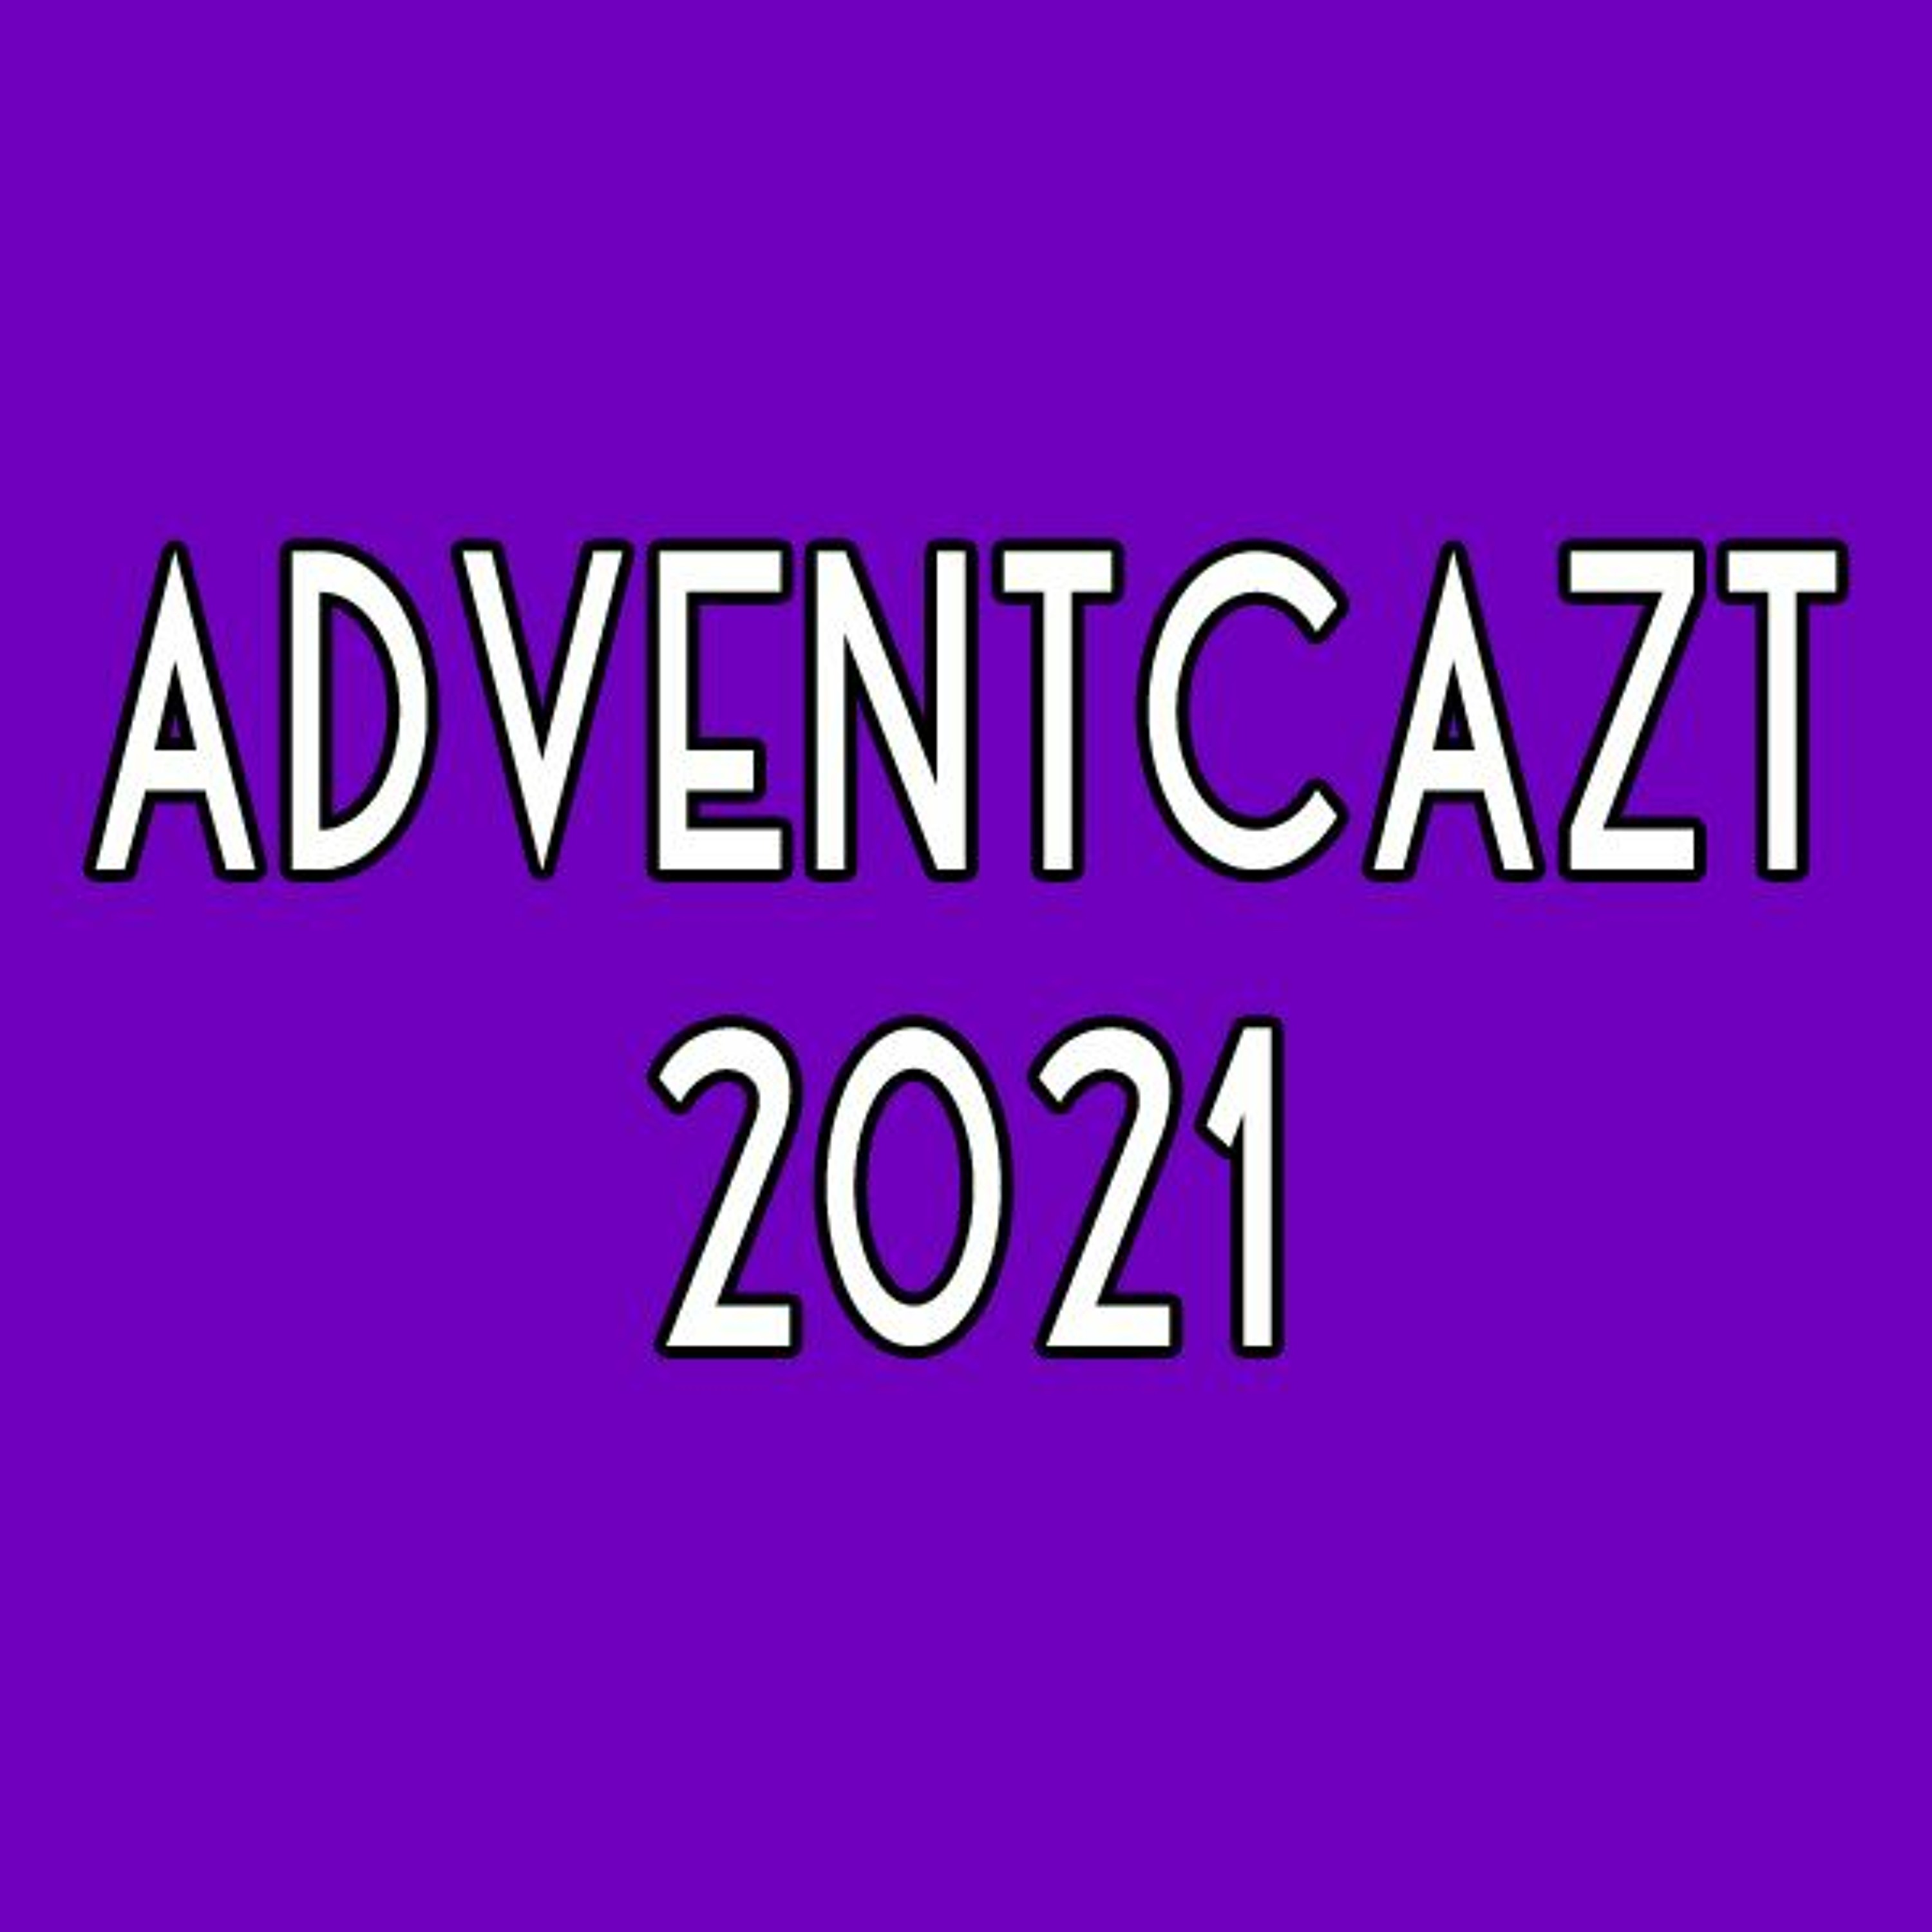 ADVENTCAzT 2021: 24 - Tuesday 4th Week of Advent